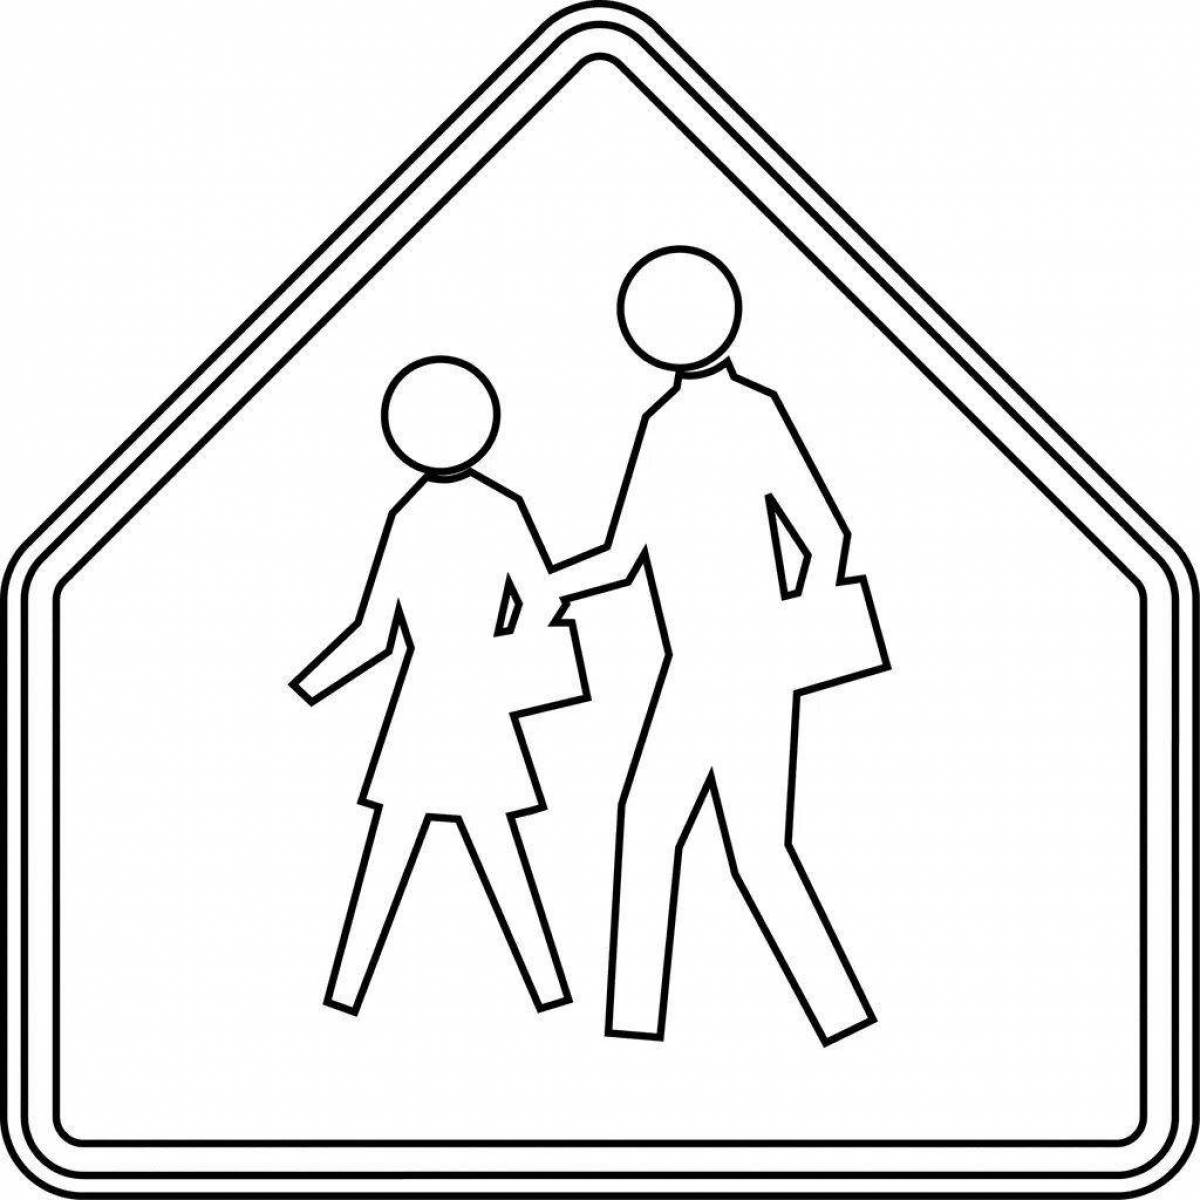 Что означает знак ребенок на коленях. Дорожные знаки раскраска. Дорожные знаки раскраска для детей. Раскраски дорожных знаков. Раскраска знаки дорожного движения для детей.